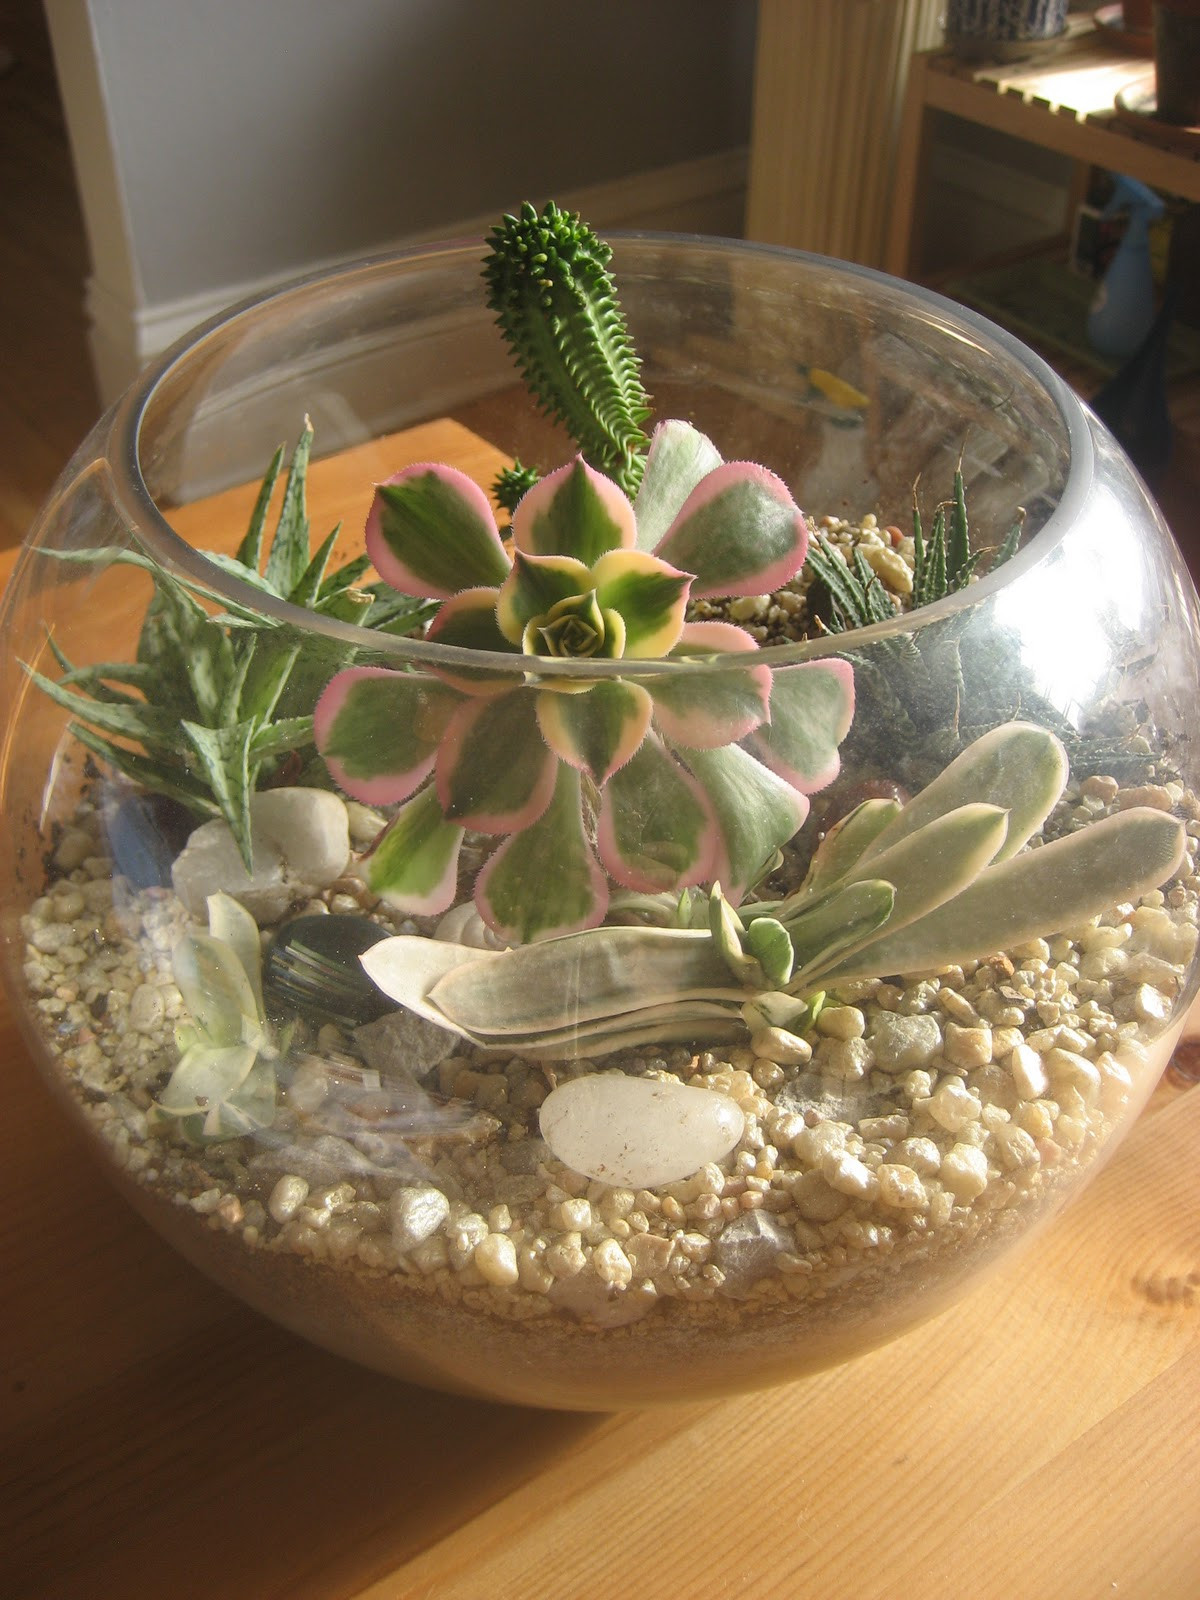 Best ideas about DIY Succulents Terrarium
. Save or Pin Chuck Does Art DIY Succulent Terrarium Now.